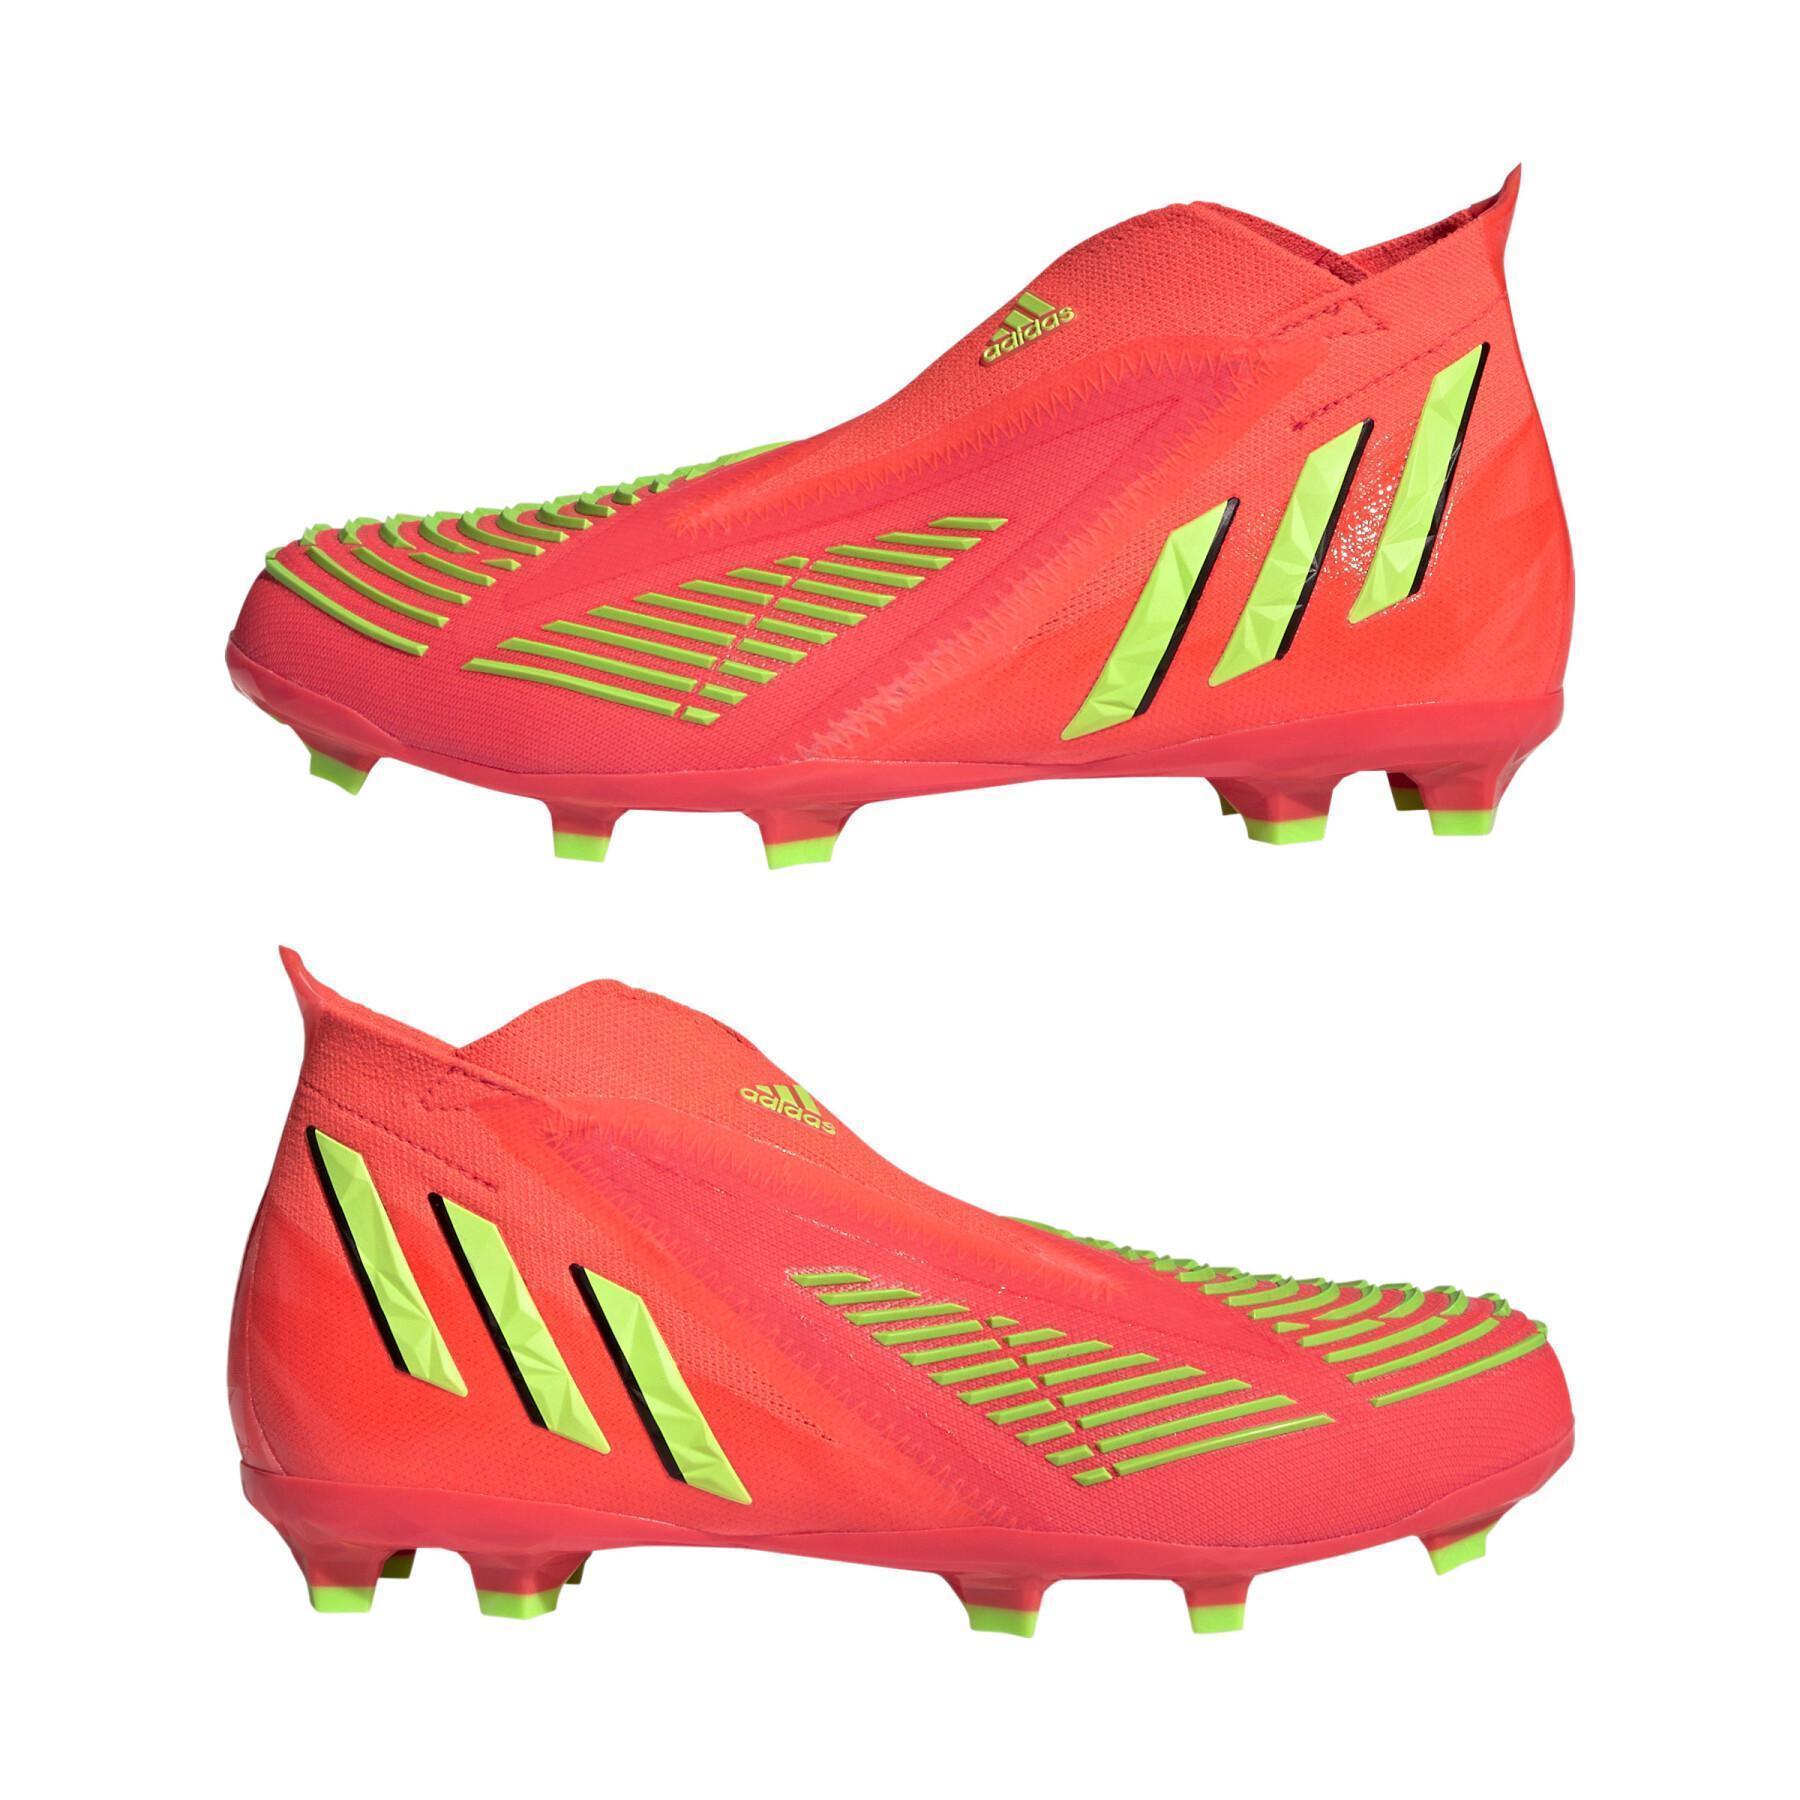 Children's soccer shoes adidas Predator Edge+ FG - Game Data Pack